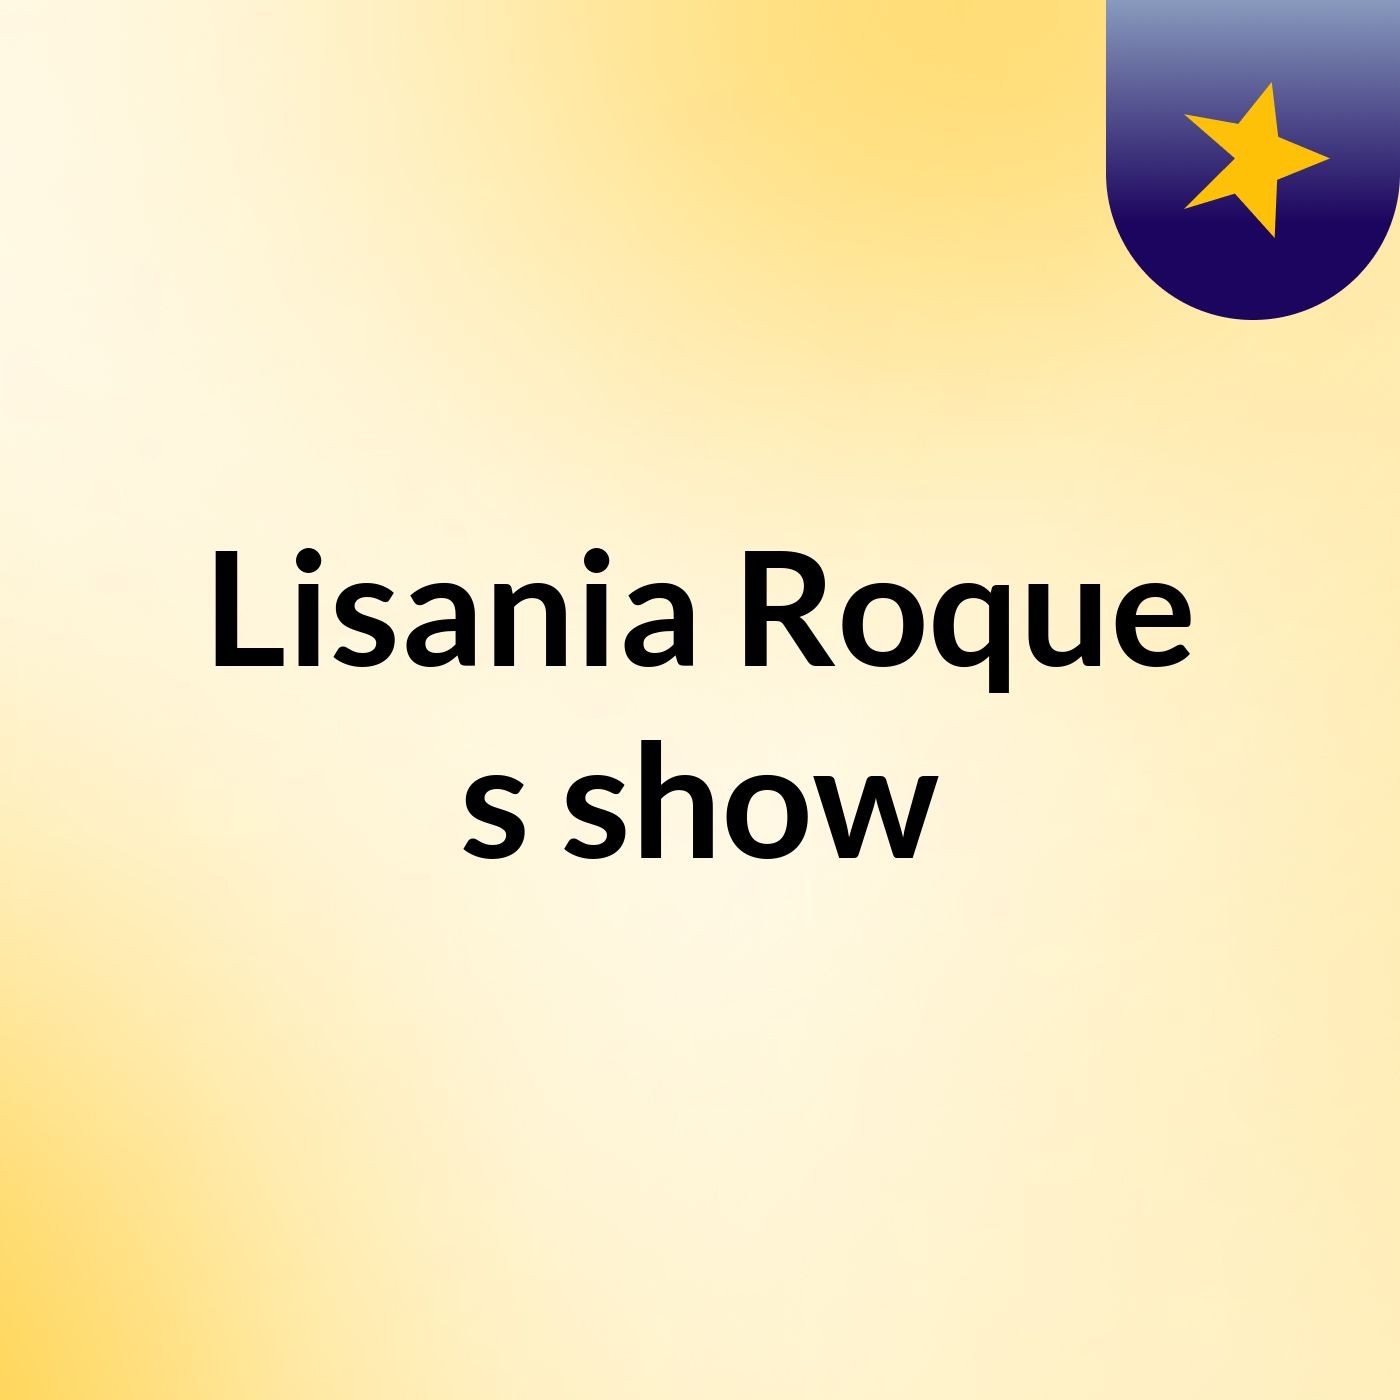 Lisania Roque's show